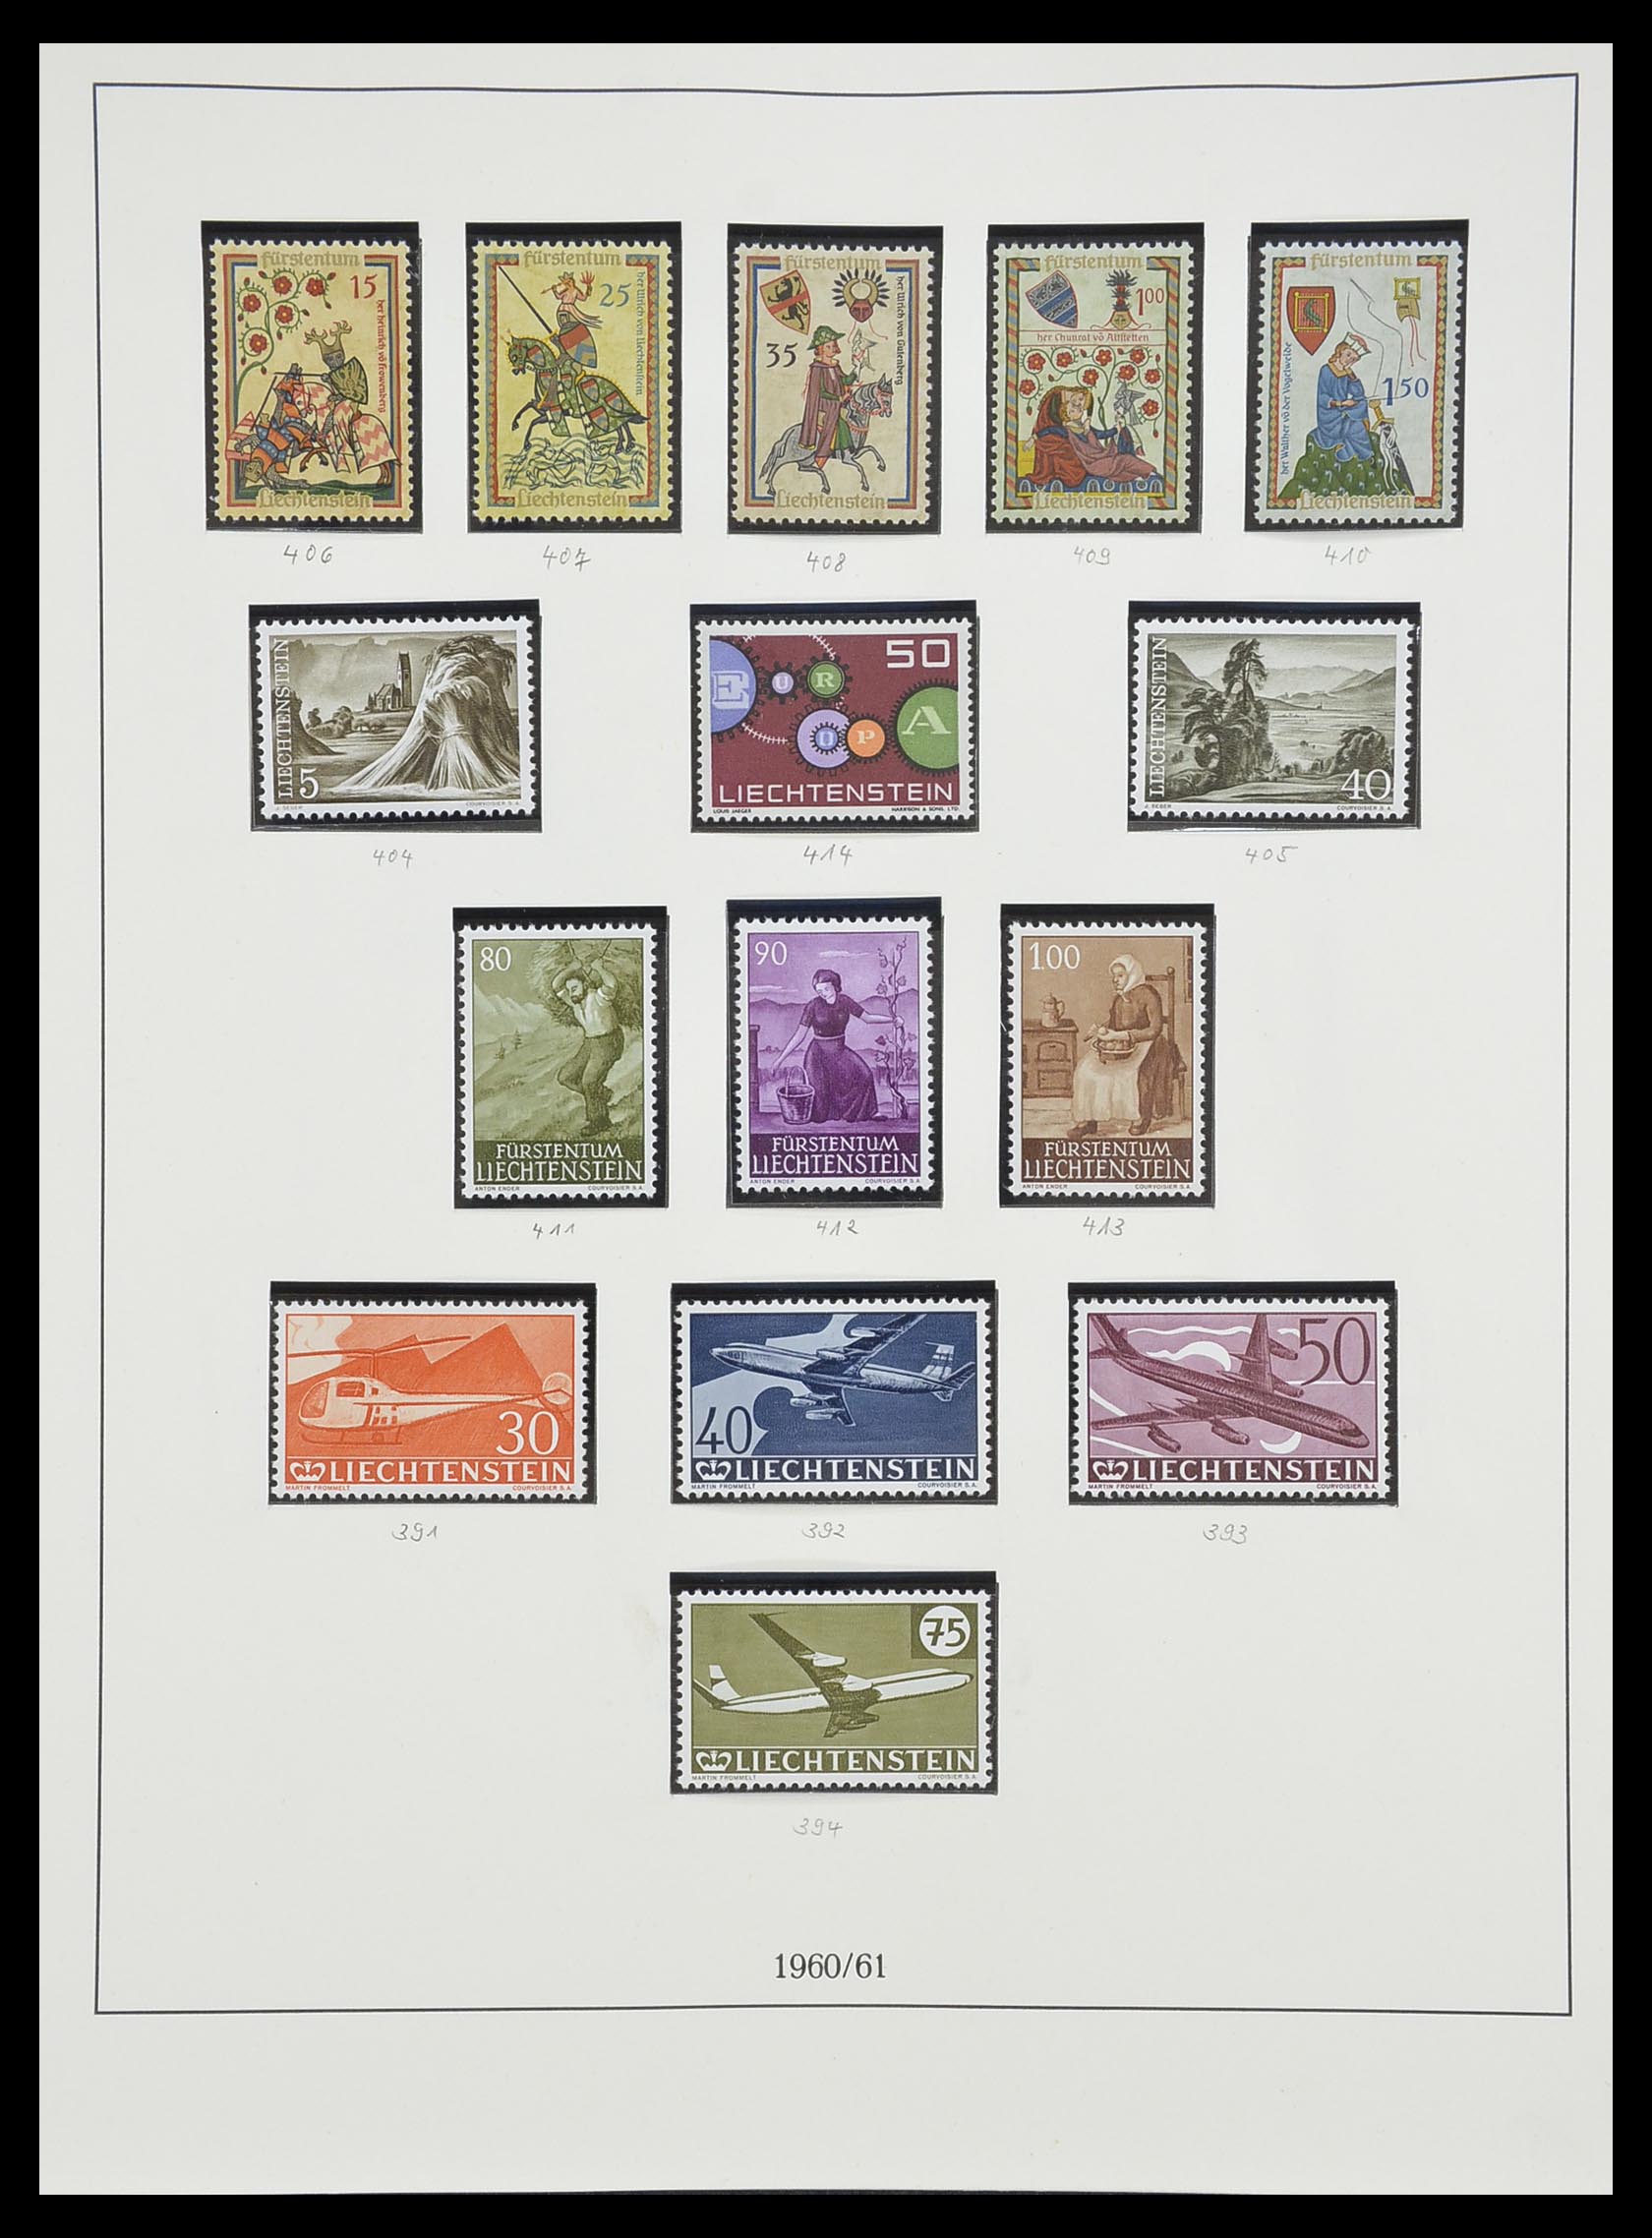 33493 059 - Stamp collection 33493 Liechtenstein 1912-2008.